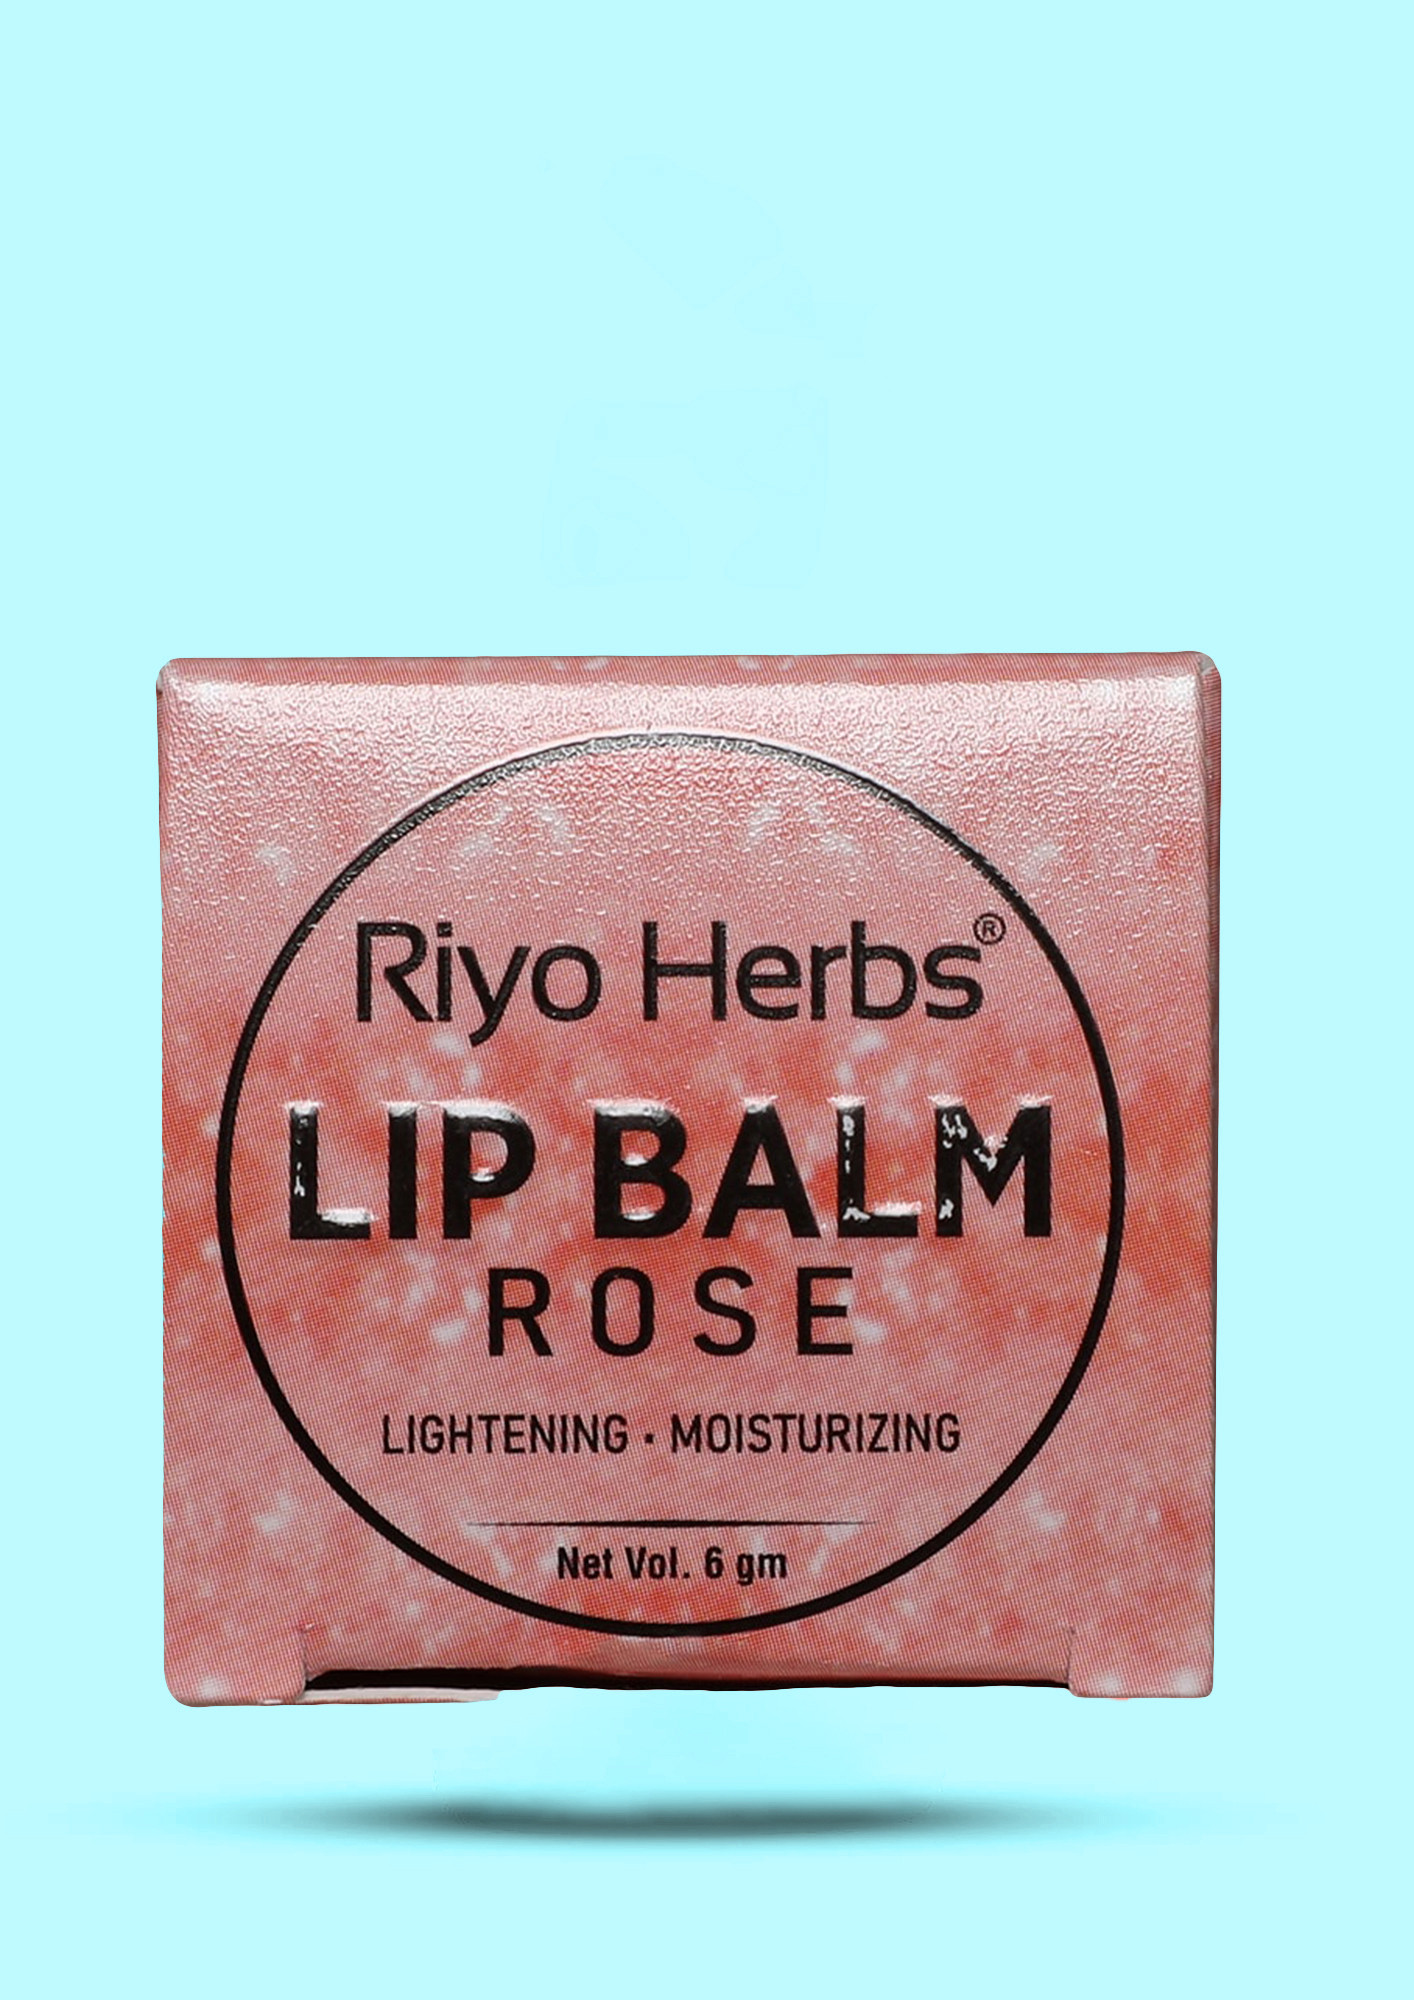 Riyo Herbs Rose Lip Balm Rose - Lightening, moisturising